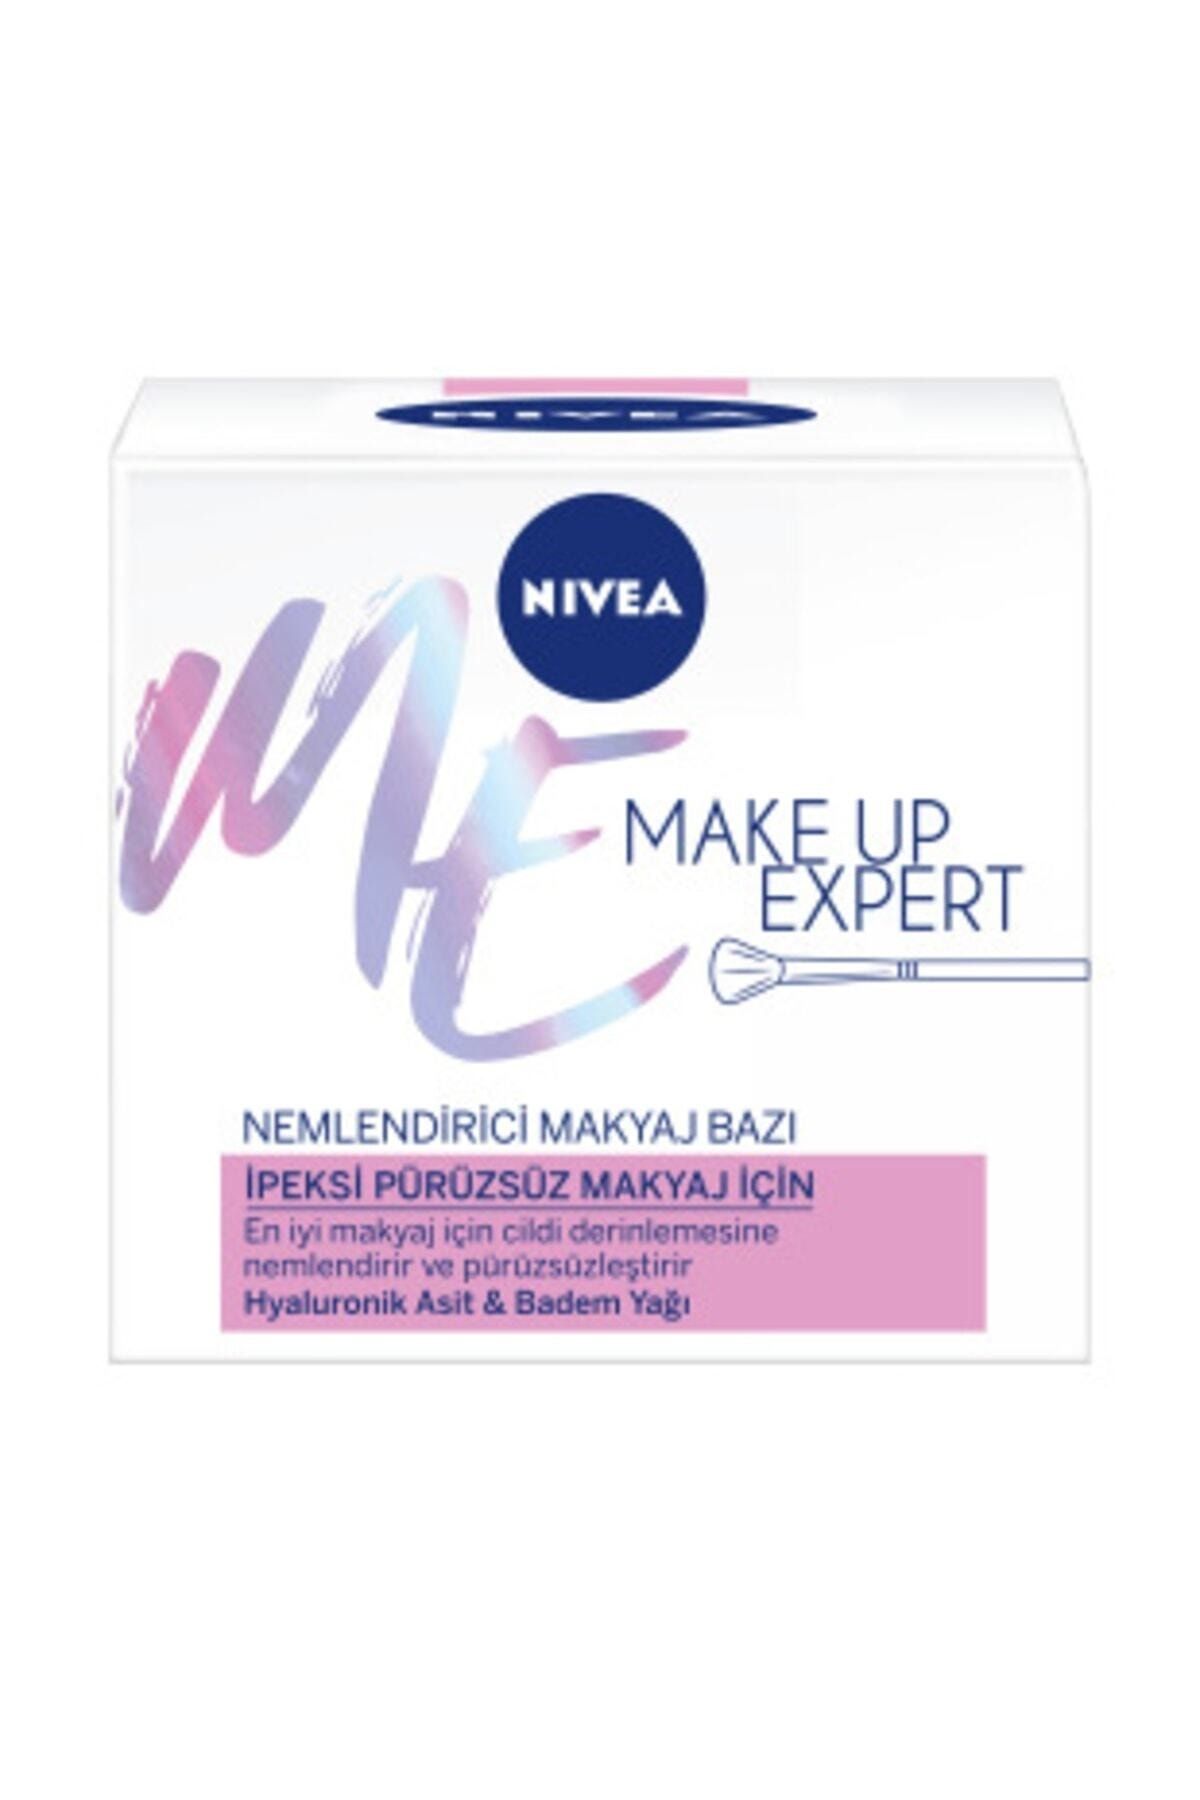 NIVEA Make Up Expert Pürüzsüz Makyaj Için Nemlendirici Makyaj Bazı 50ml